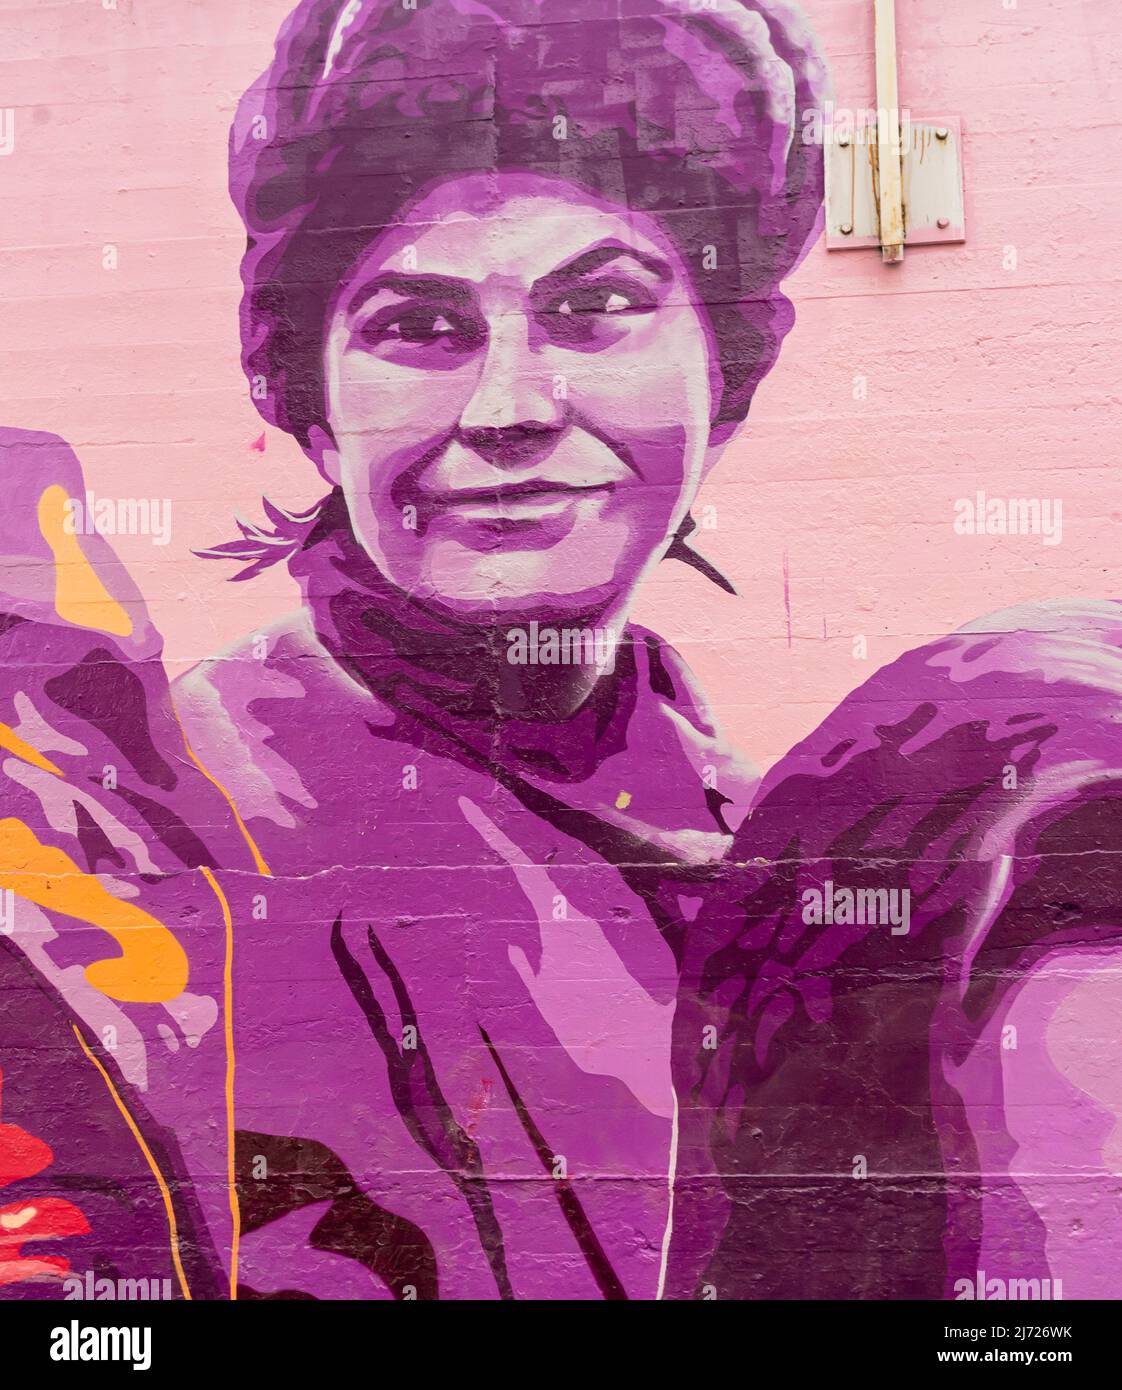 Mural of female Soviet sniper Liudmila Pavlichenko, Concepcion feminist mural  La unión hace la fuerza,  on the wall in, Madrid Stock Photo